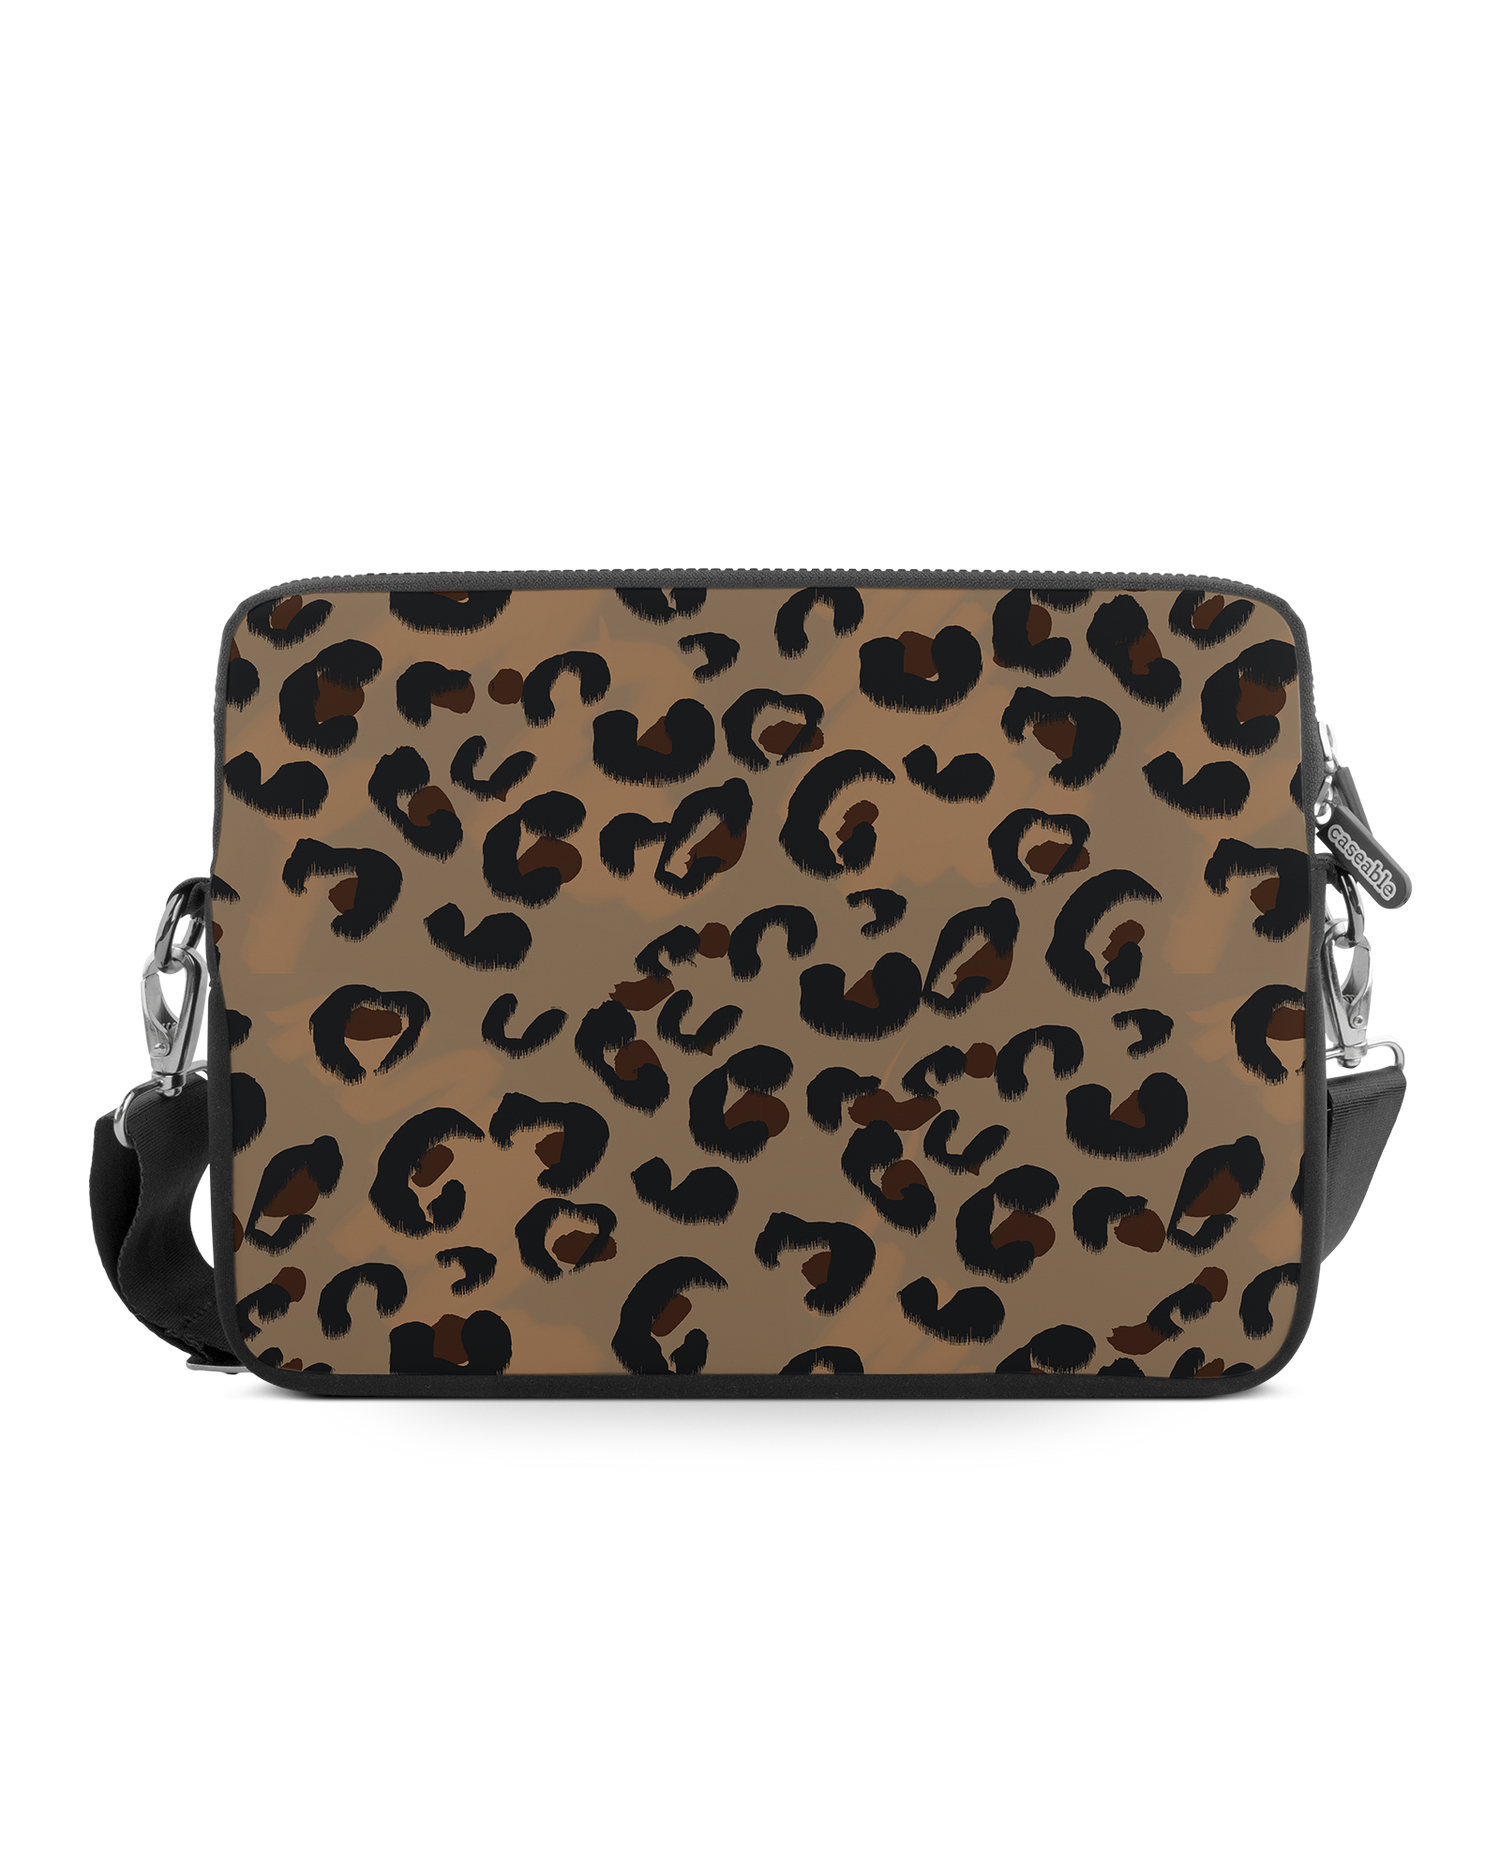 Leopard Repeat Premium Laptop Bag 15 inch: Front View